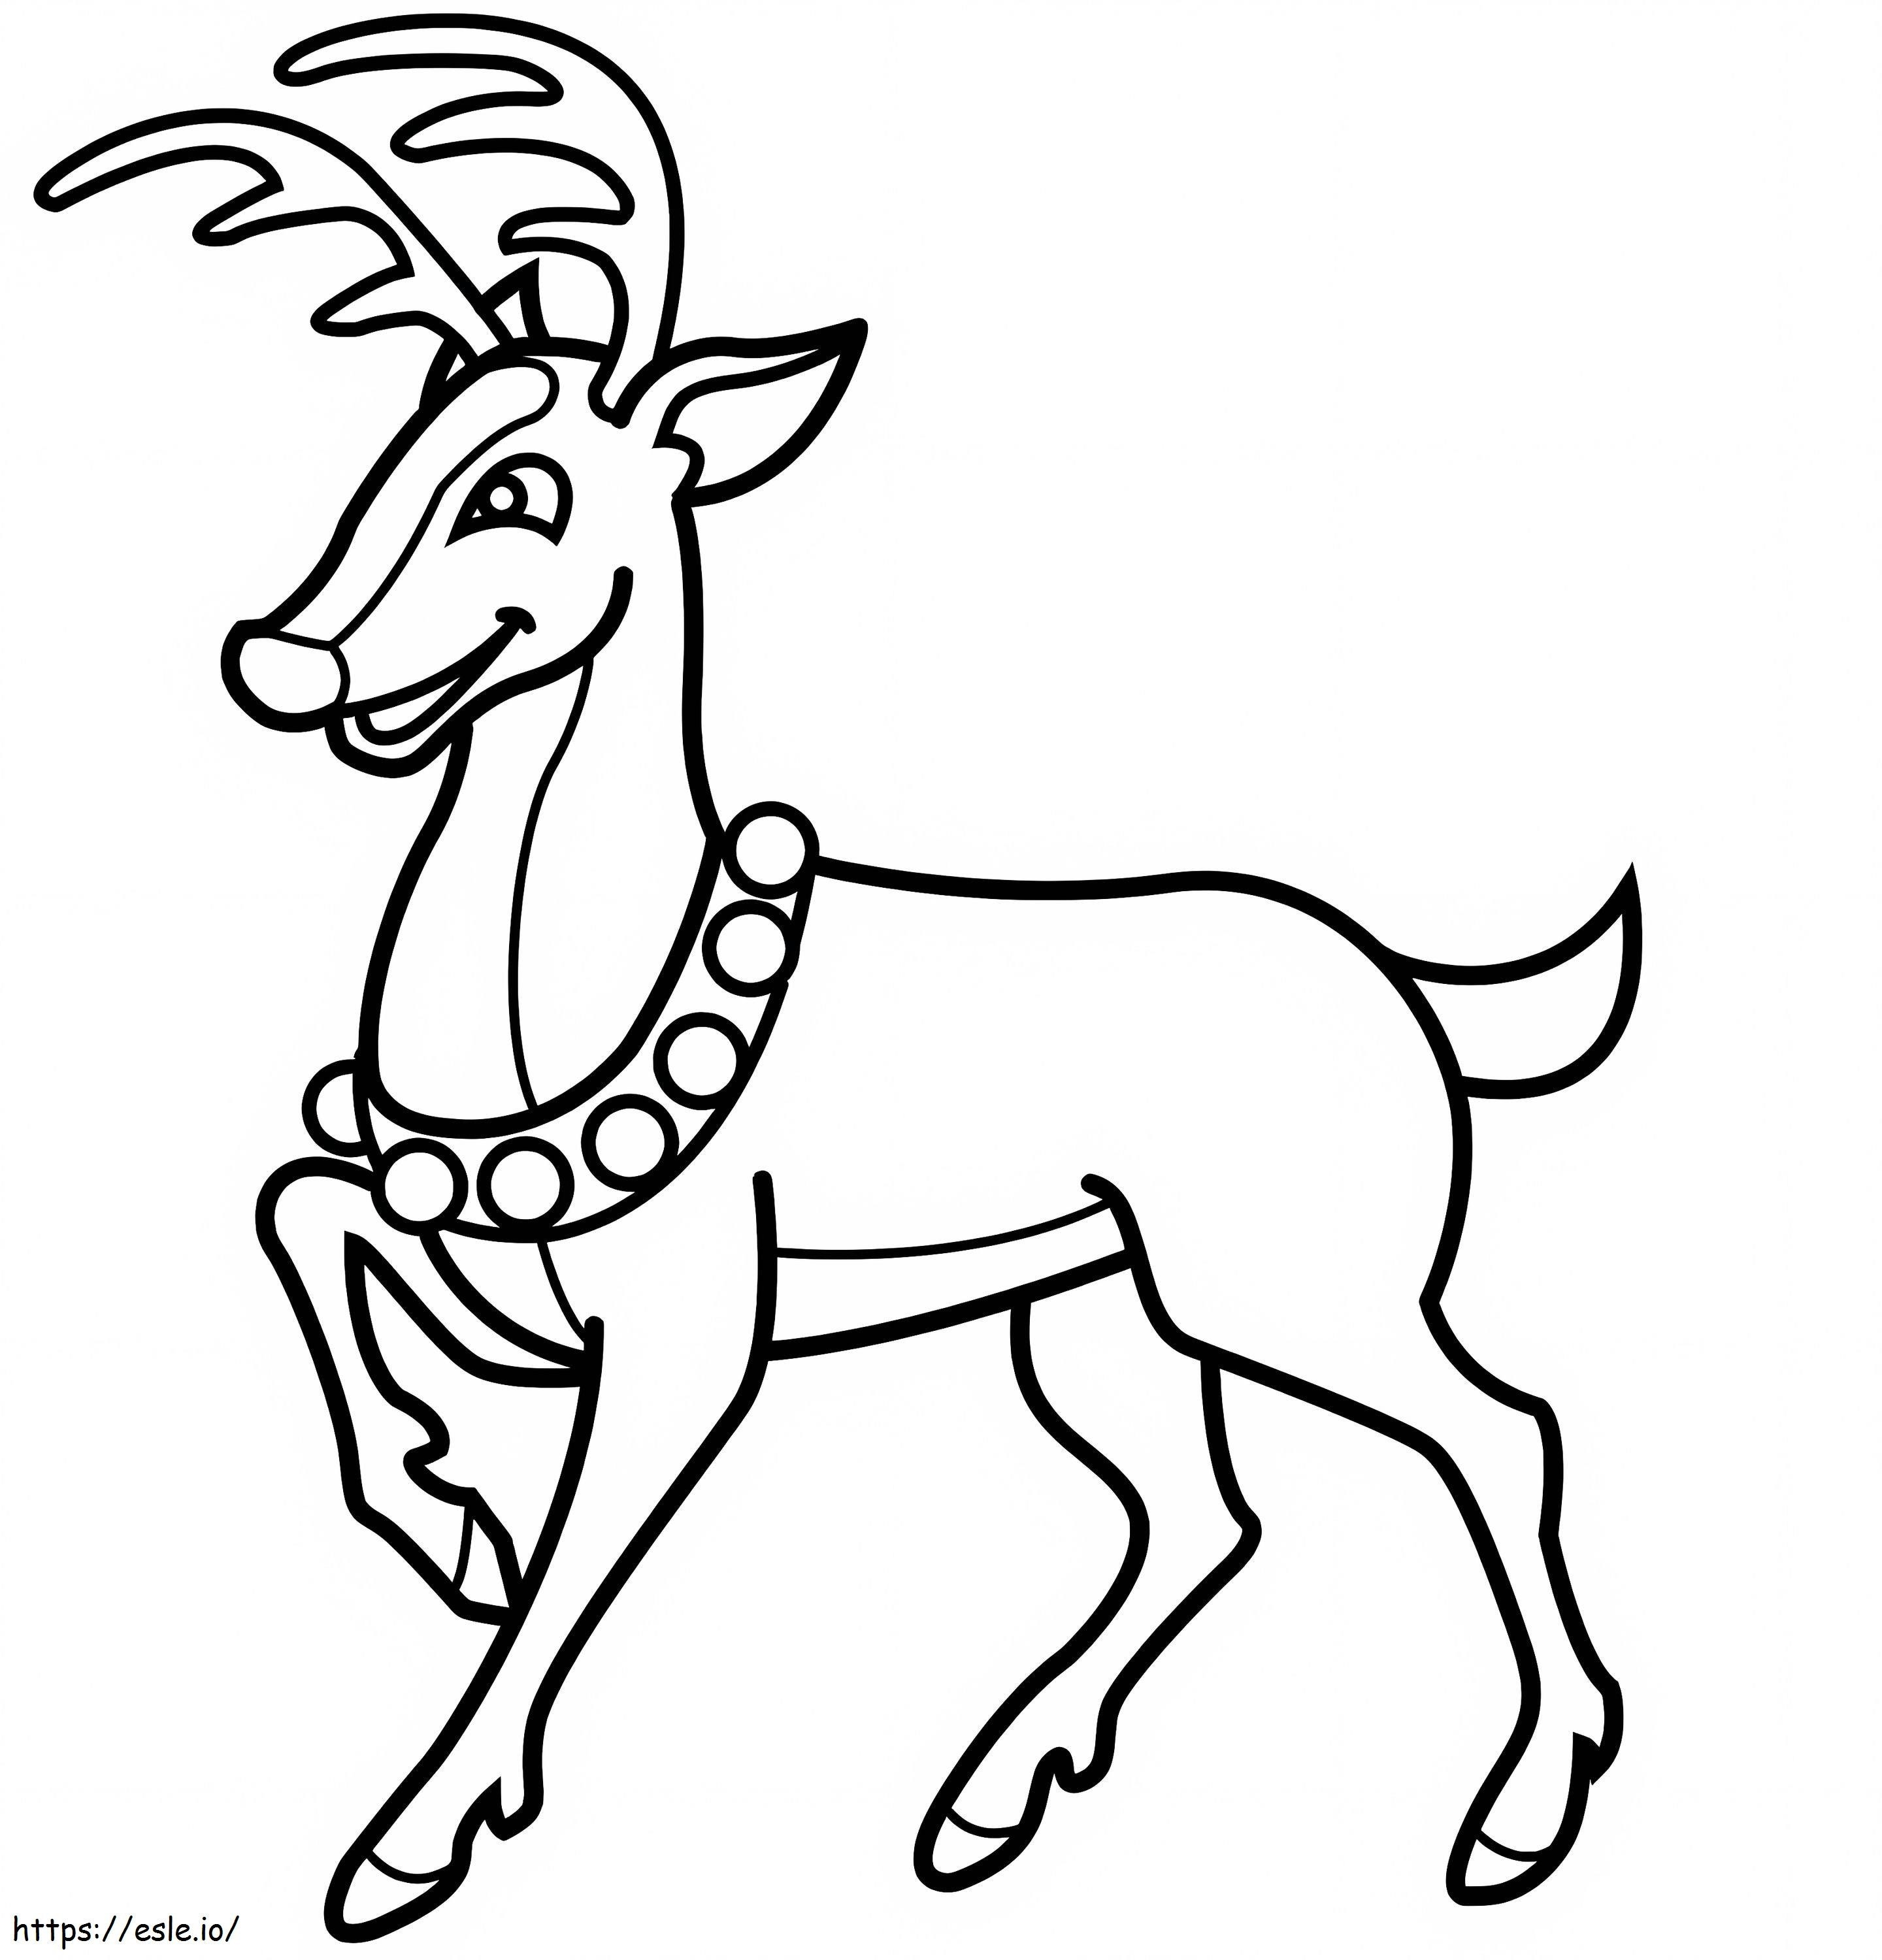 Fun Reindeer coloring page